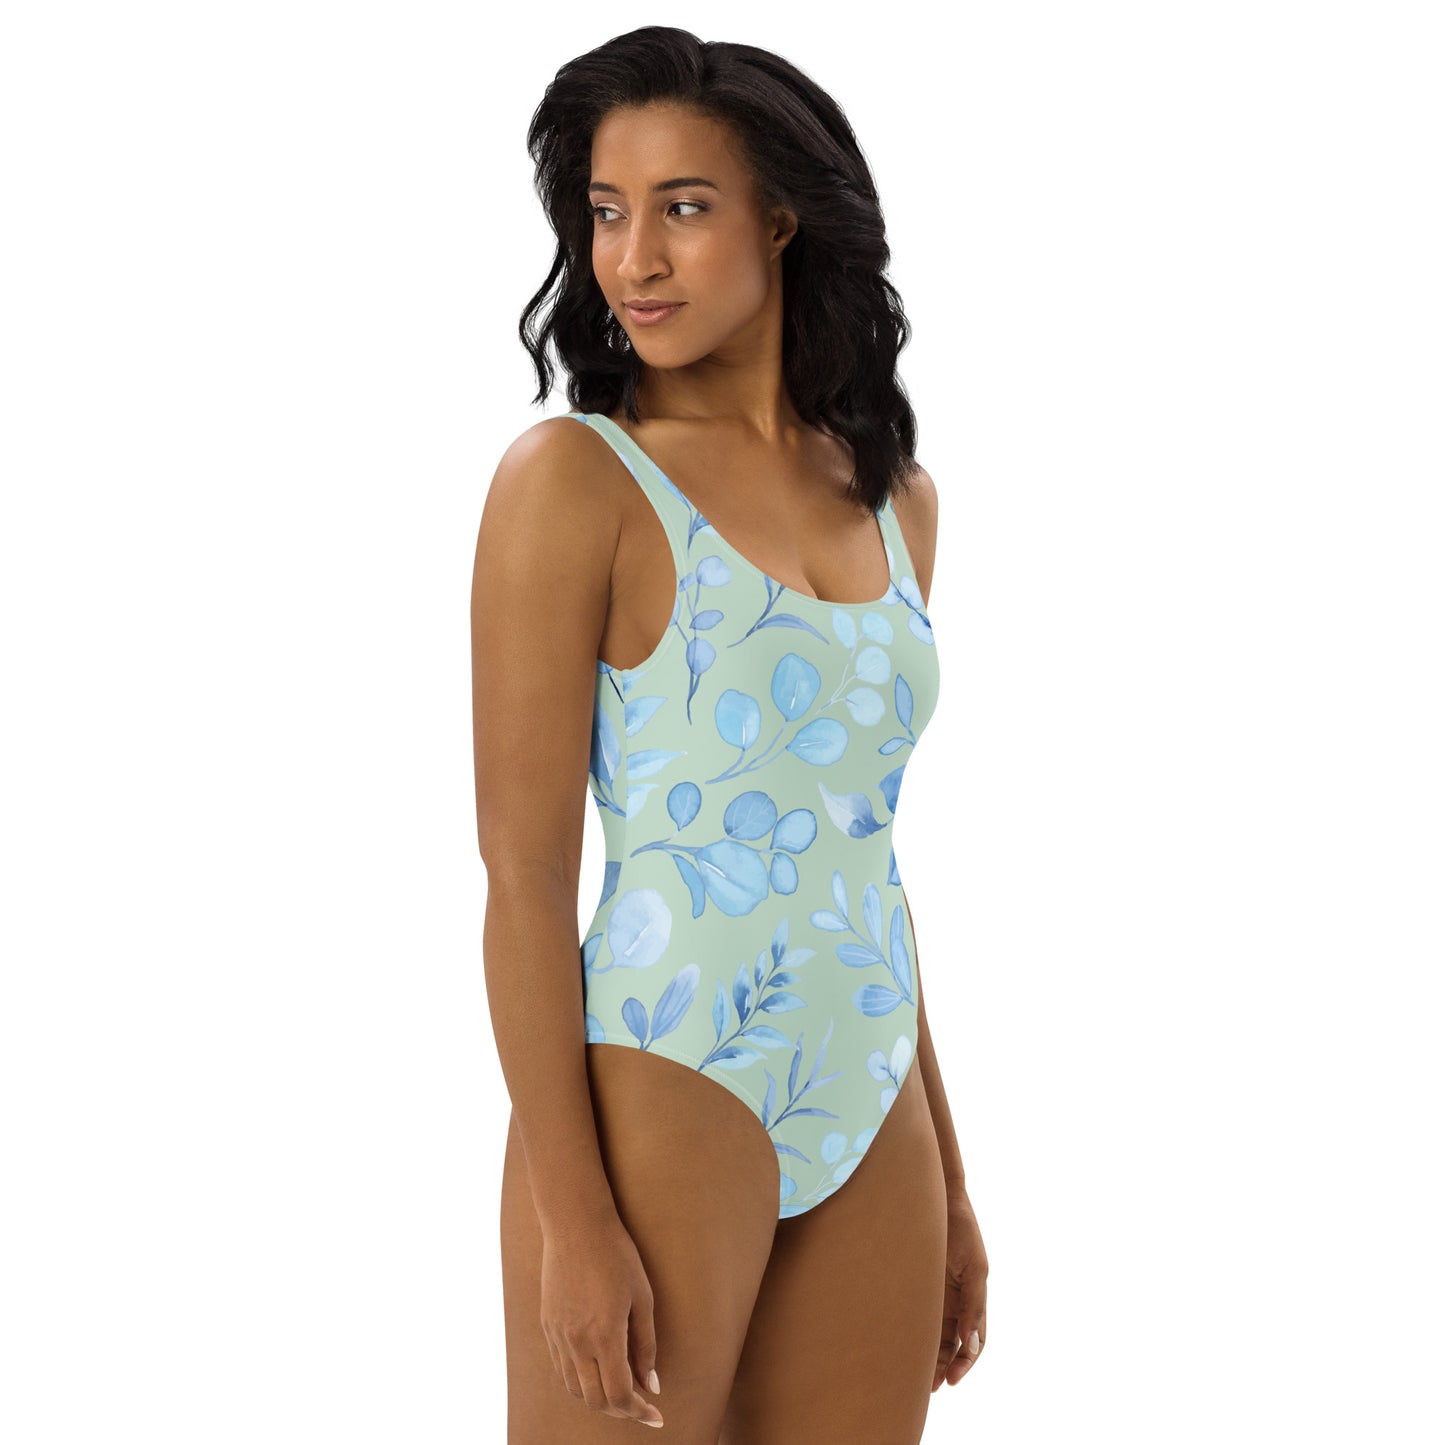 Carpe Diem Gear | Women's Swimsuit | Floral IV | Women's One-Piece Swimsuit UPF 50+